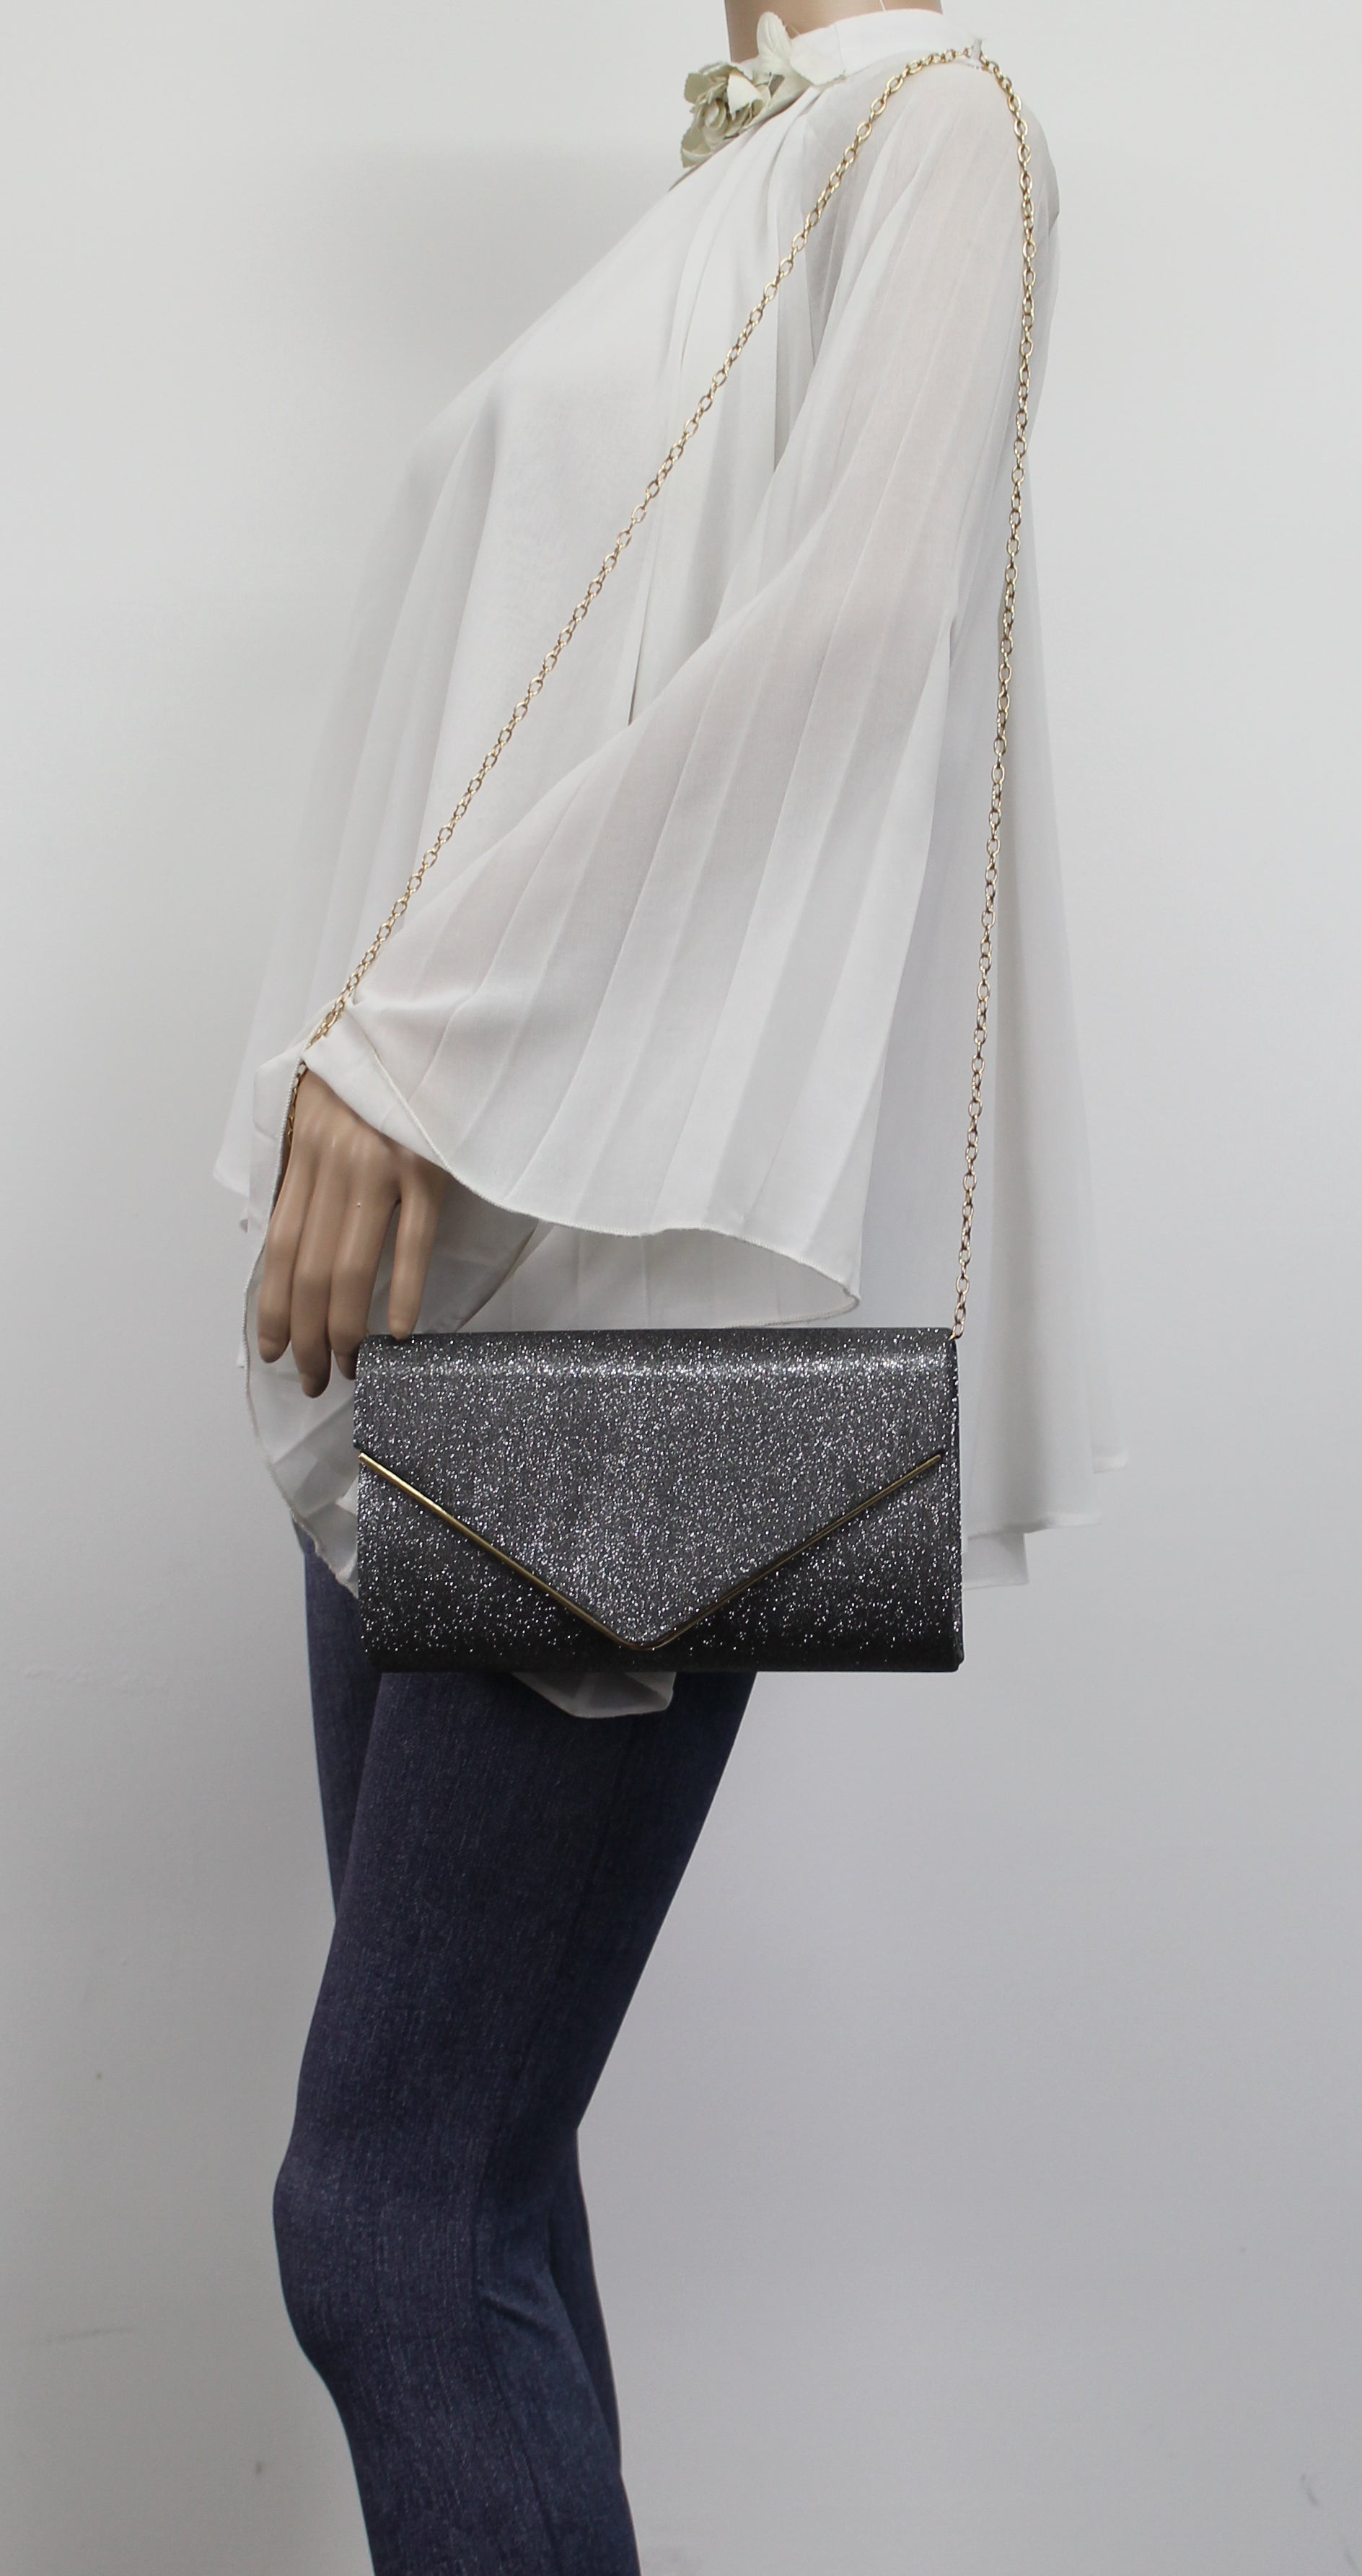 SWANKYSWANS Maya Clutch Bag Grey Cute Cheap Clutch Bag For Weddings School and Work